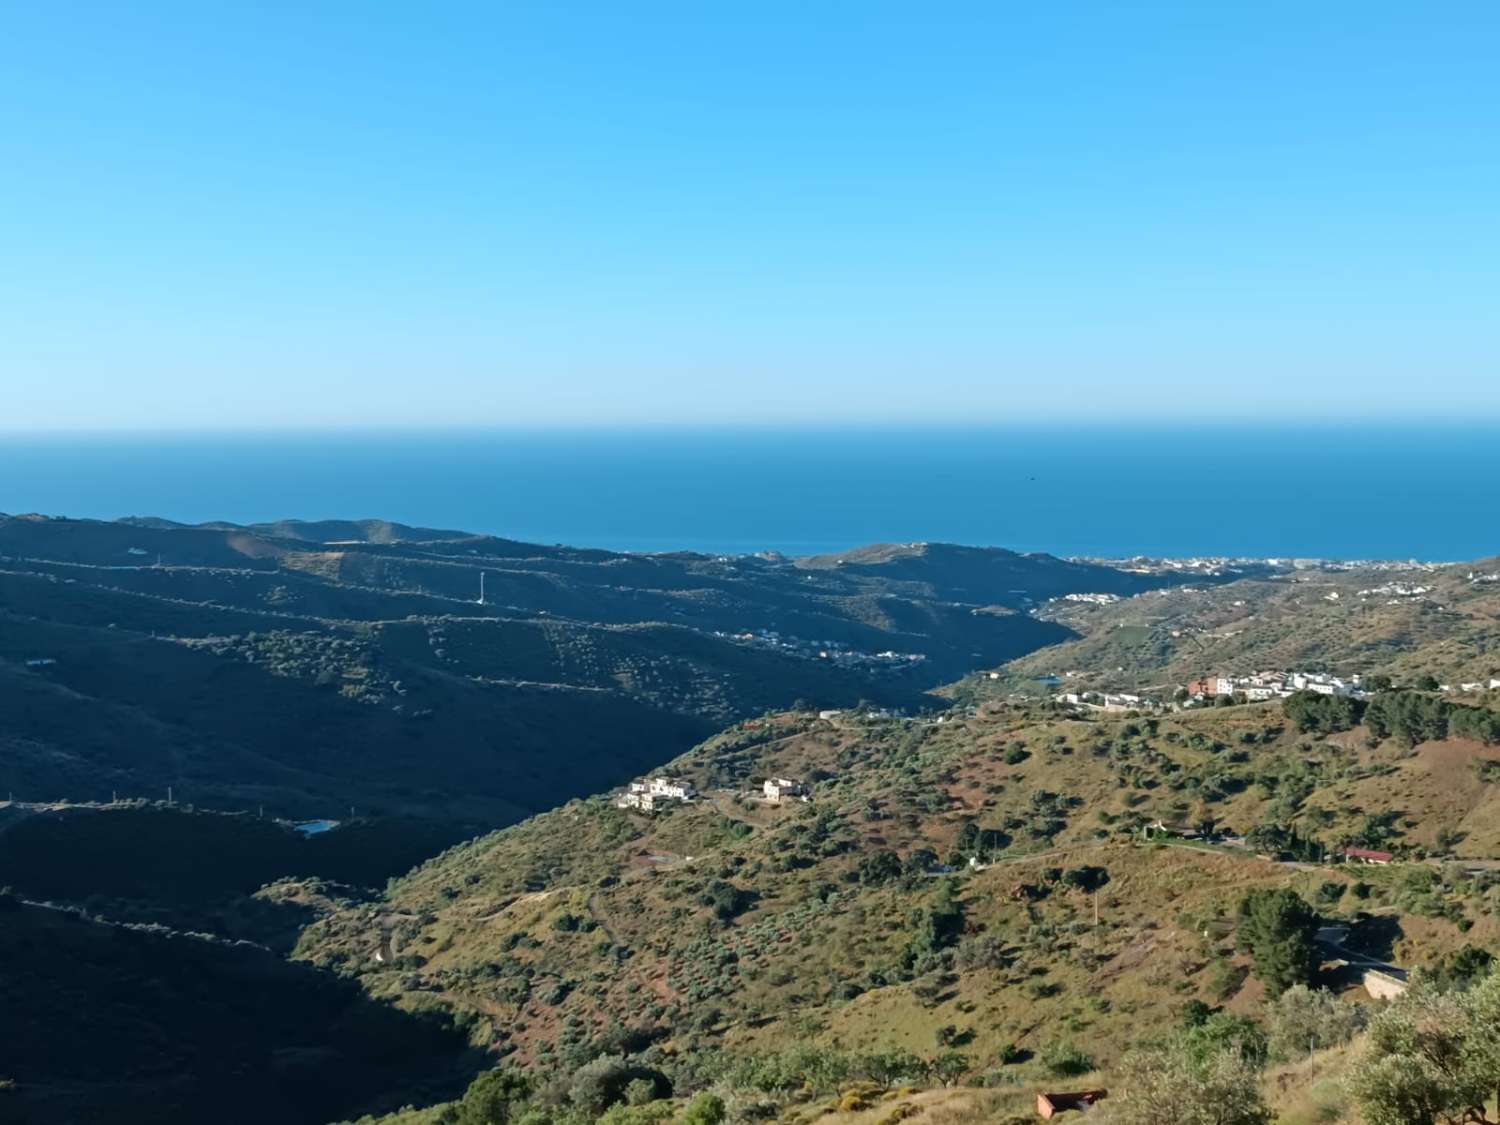 Tomt i Moclinejo med utsikt över havet och vattnet